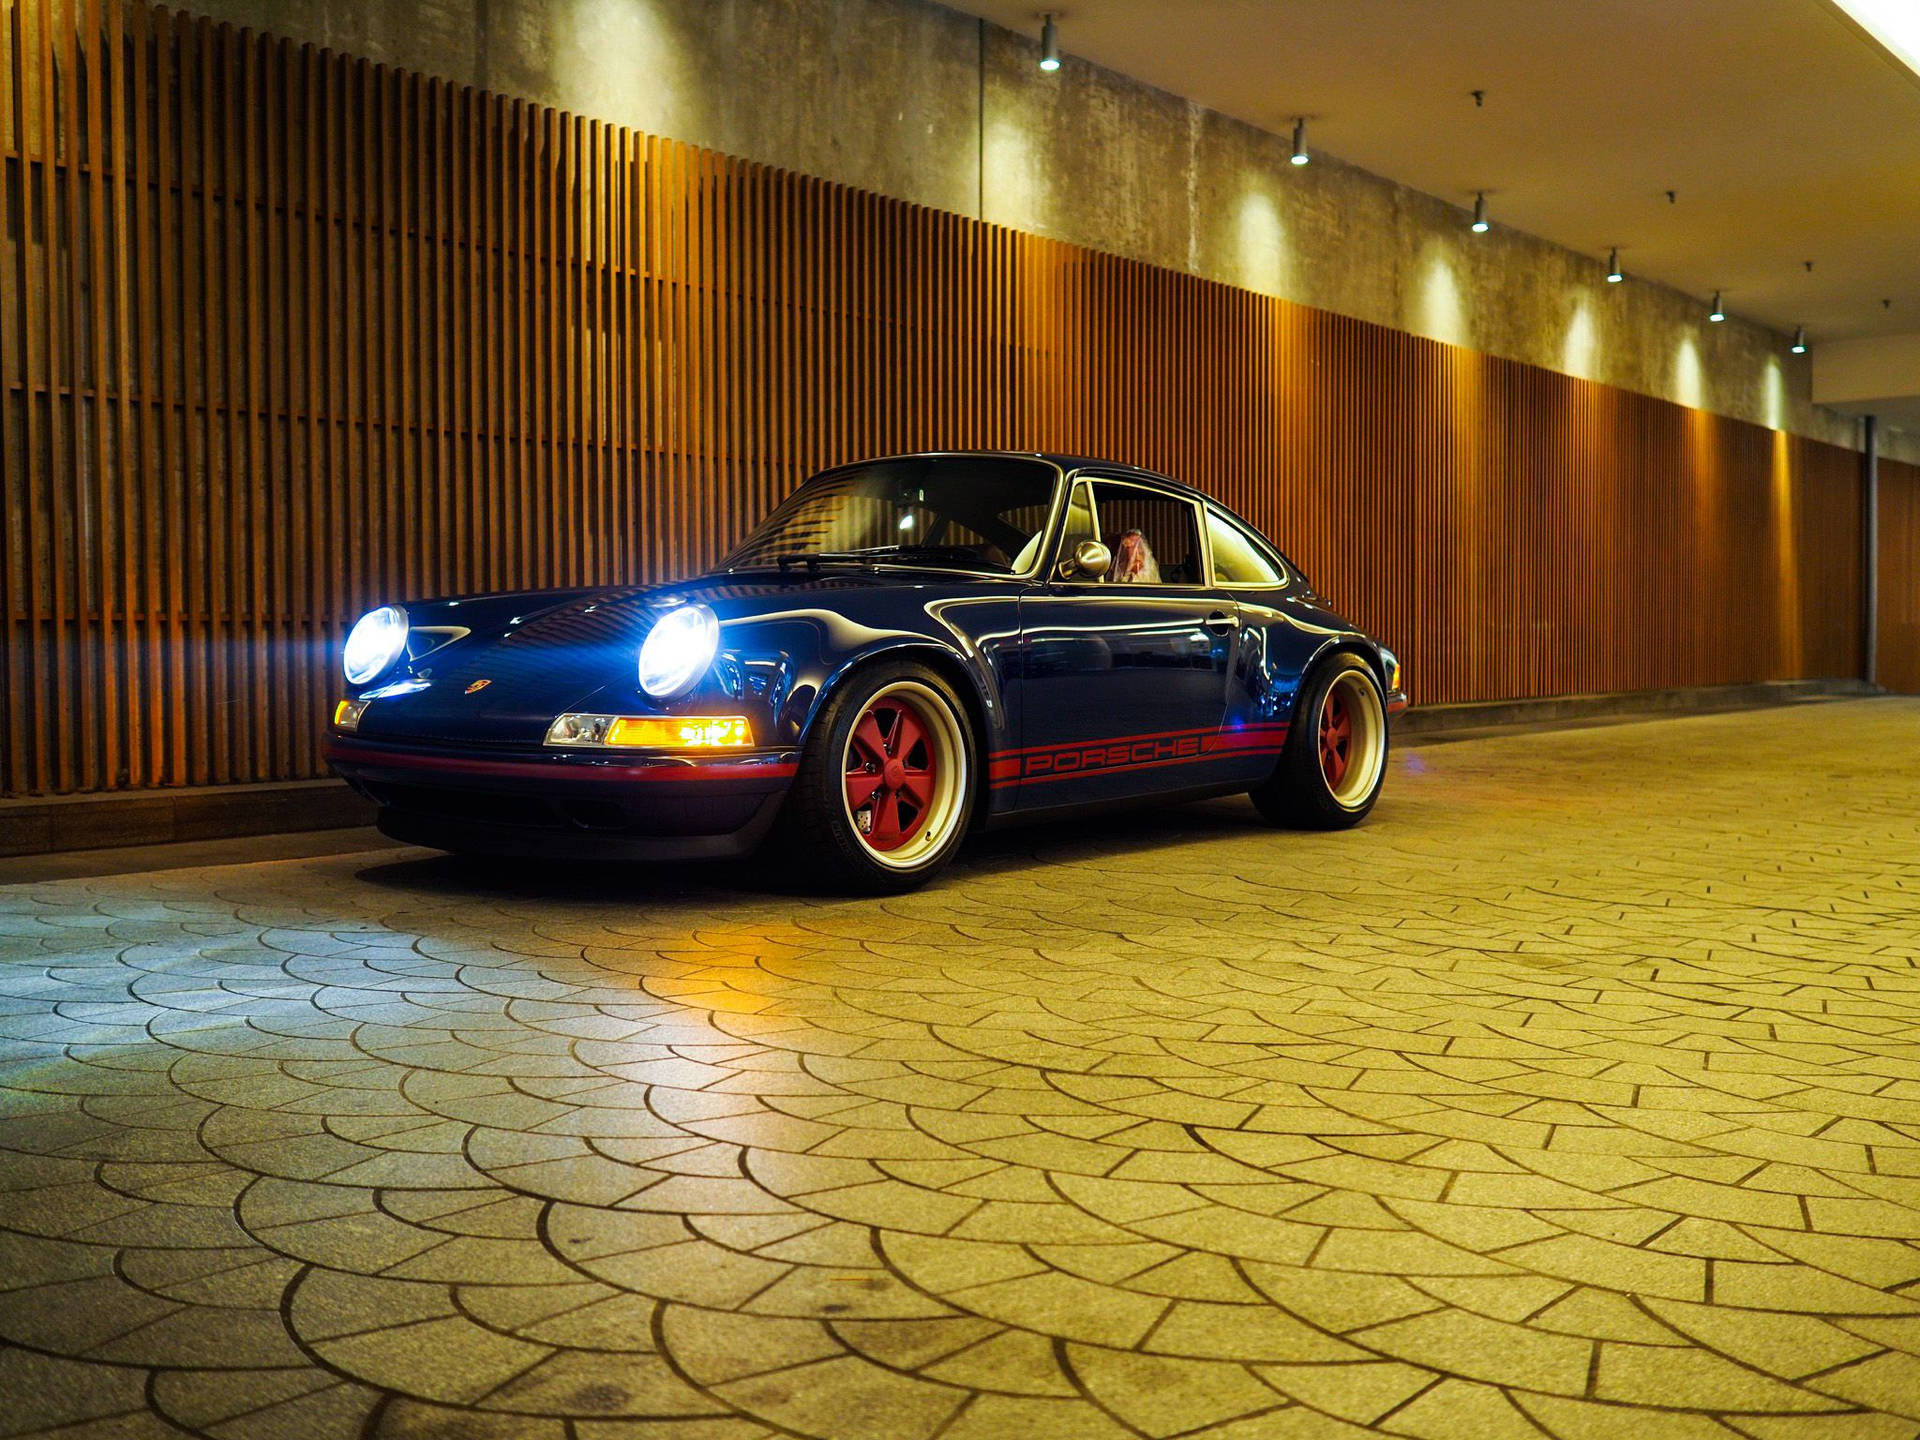 Dark Blue Singer Porsche Background